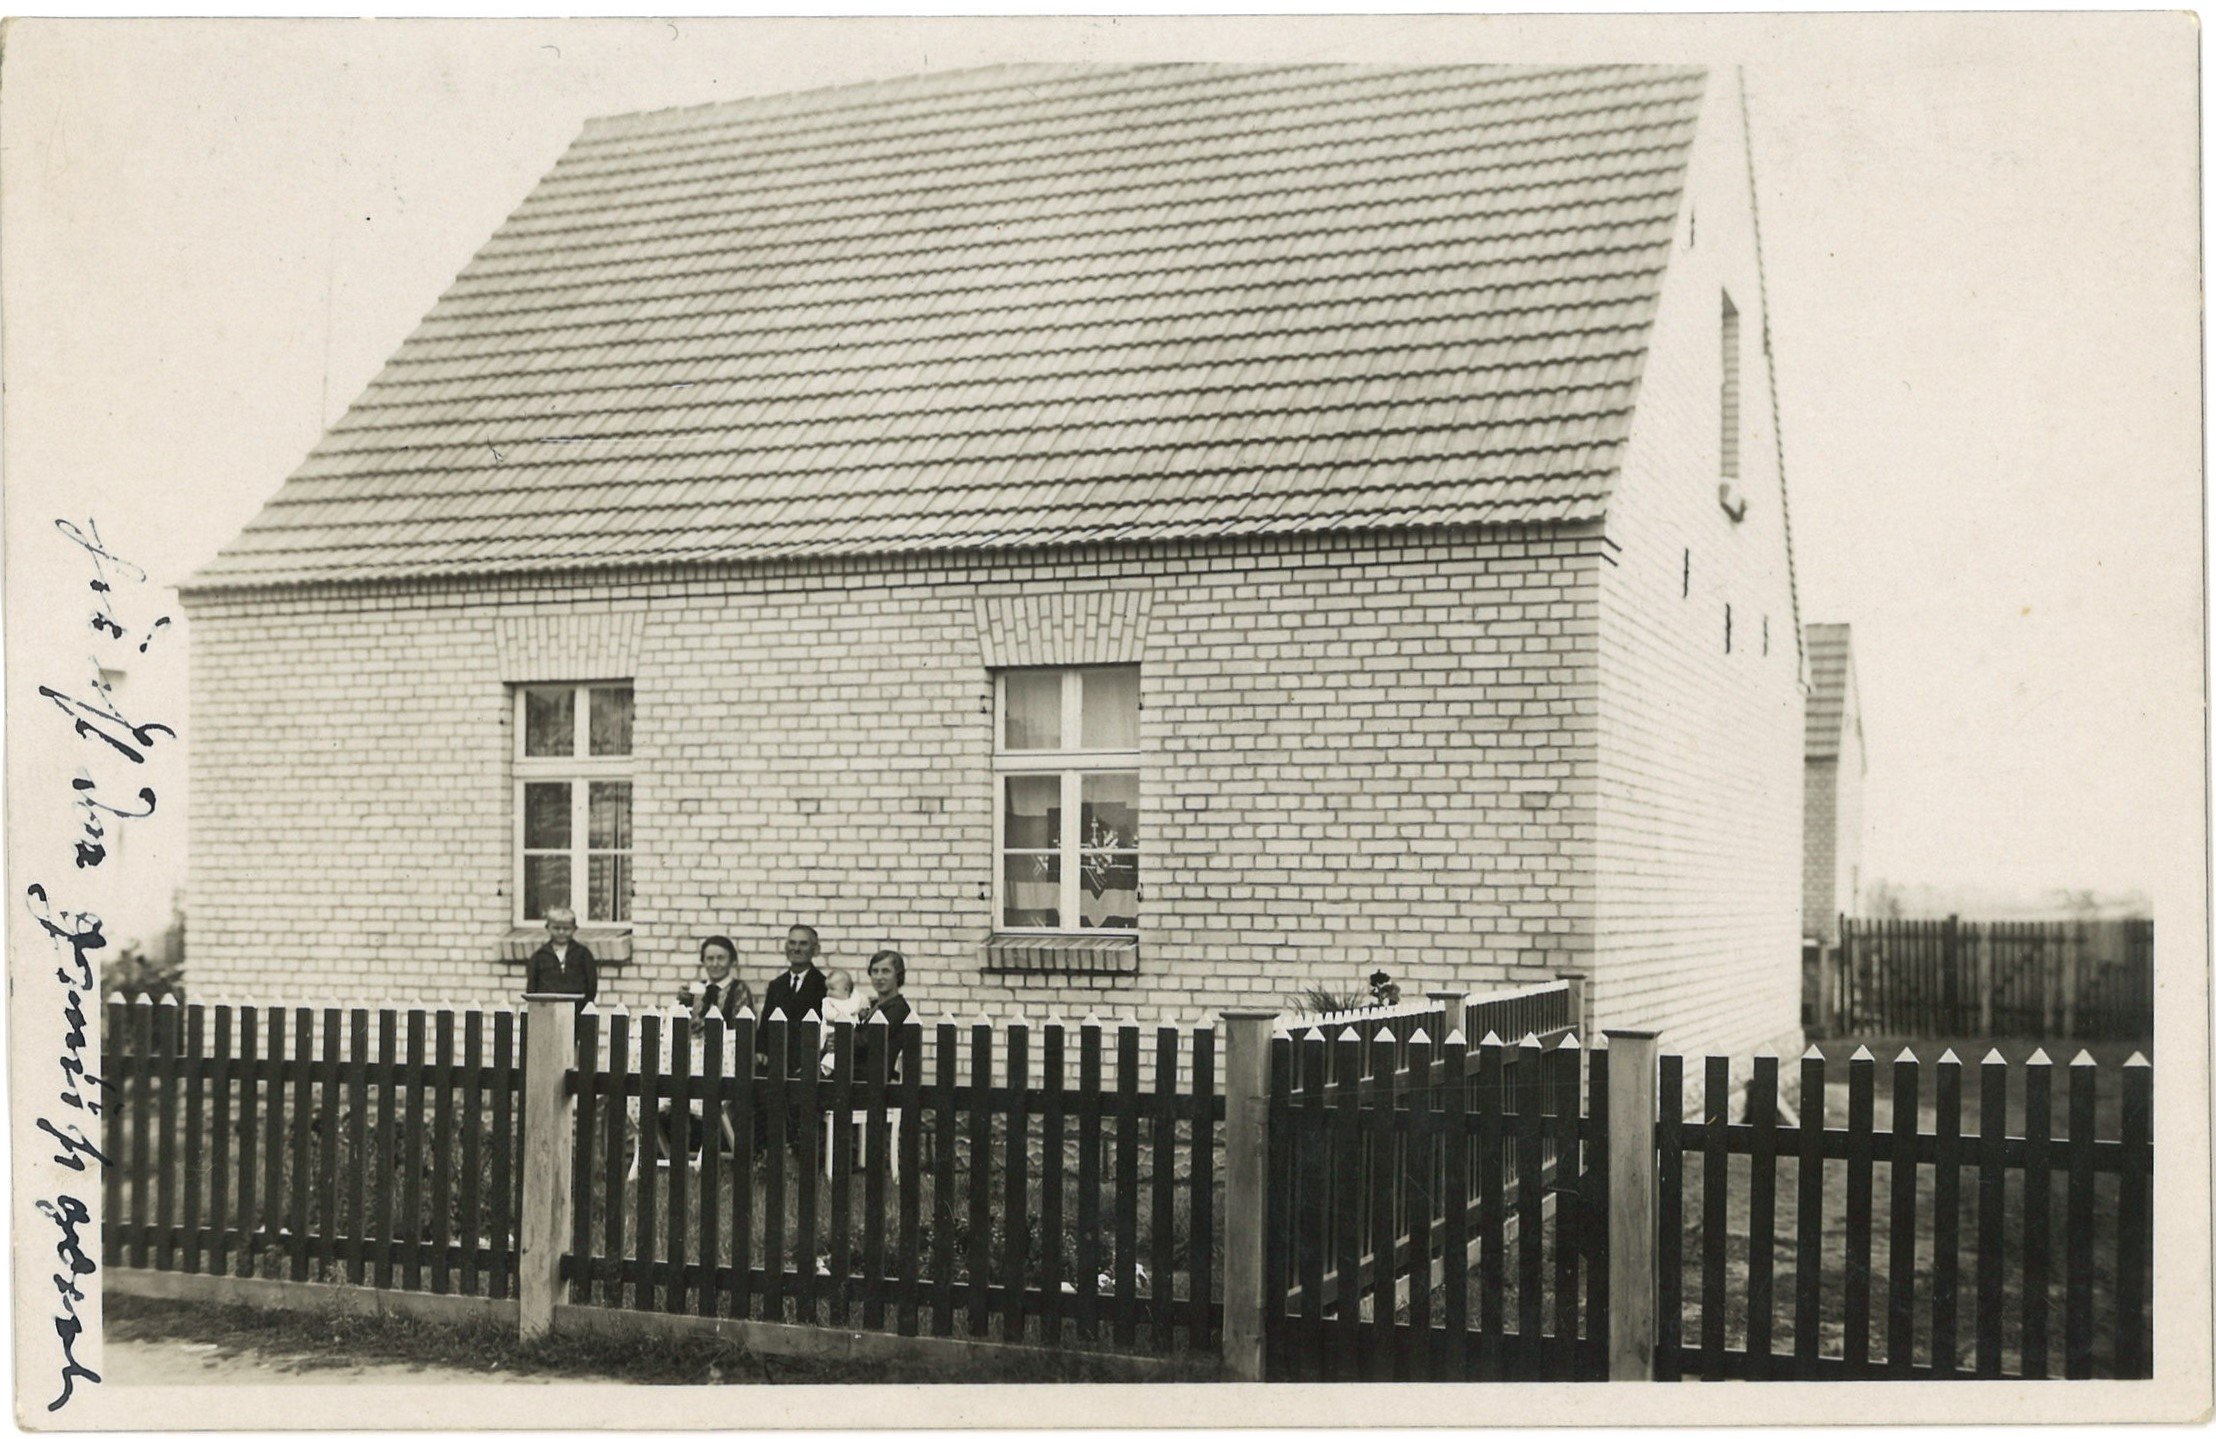 Neubeelitz (Kr. Friedeberg/Nm.) / Nowe Bielice: Siedlungshaus (Landesgeschichtliche Vereinigung für die Mark Brandenburg e.V., Archiv CC BY)